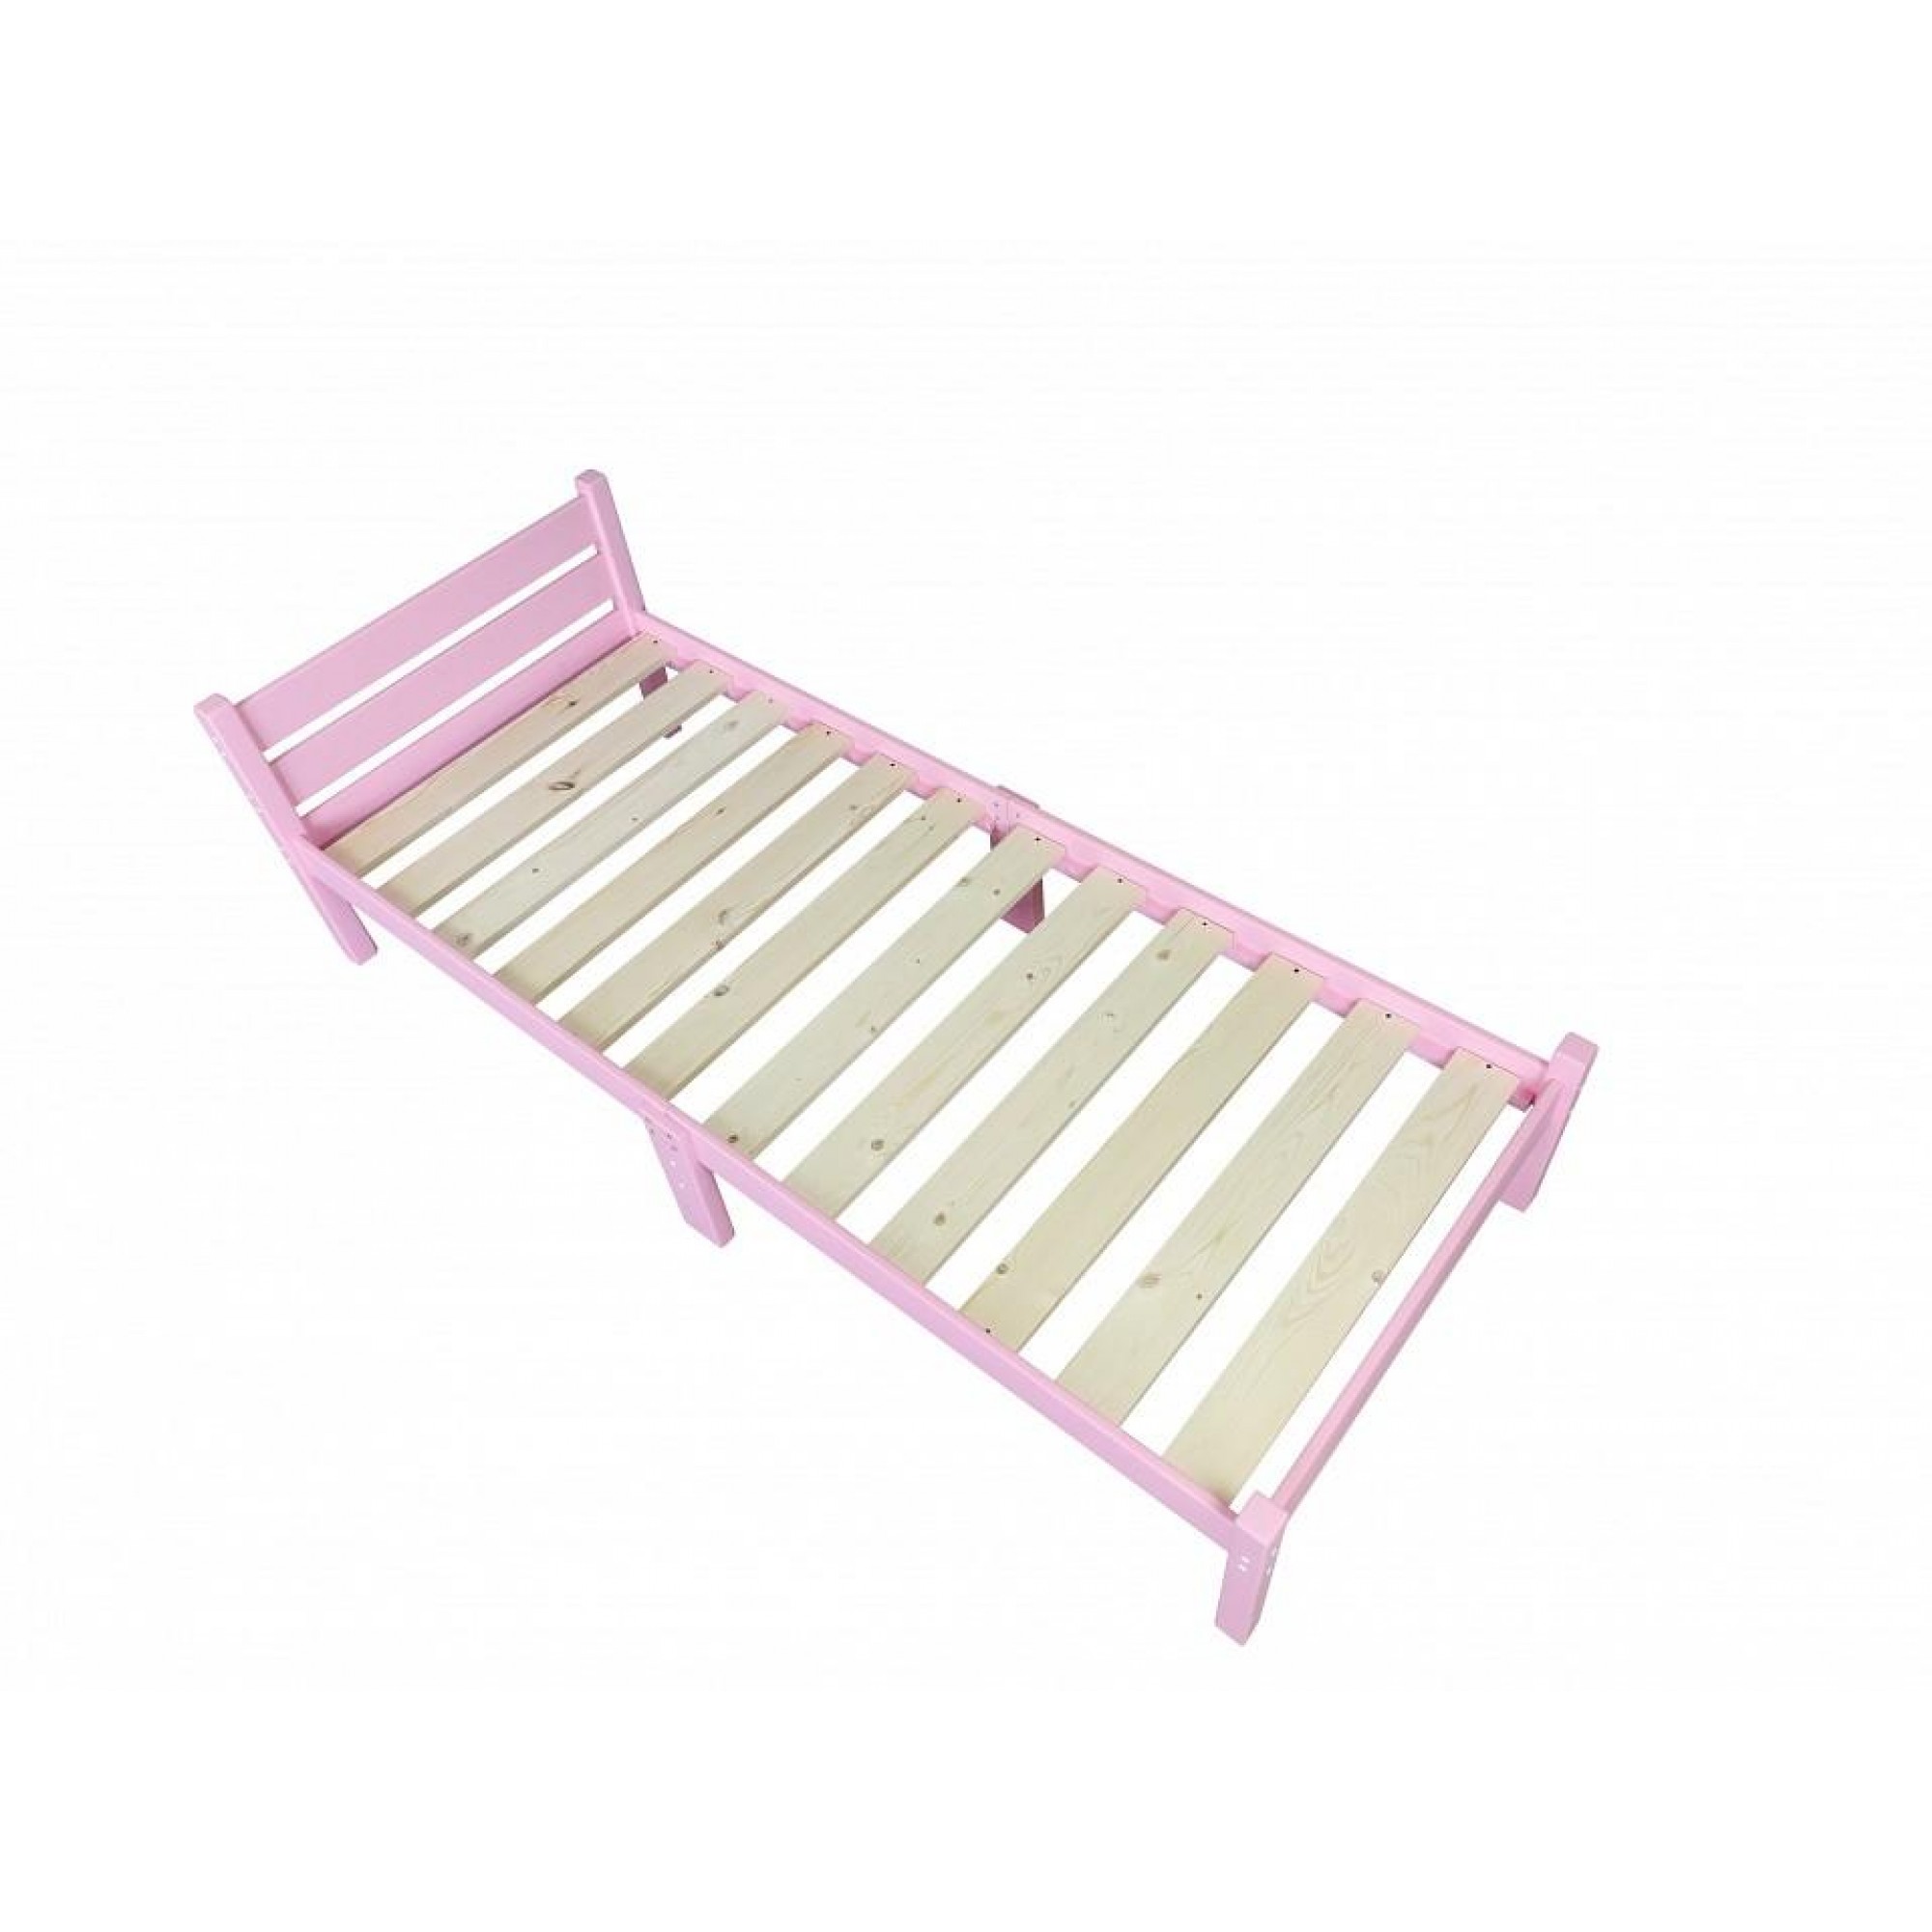 Кровать односпальная Компакт 2000x800 розовый    SLR_kompakt80roz